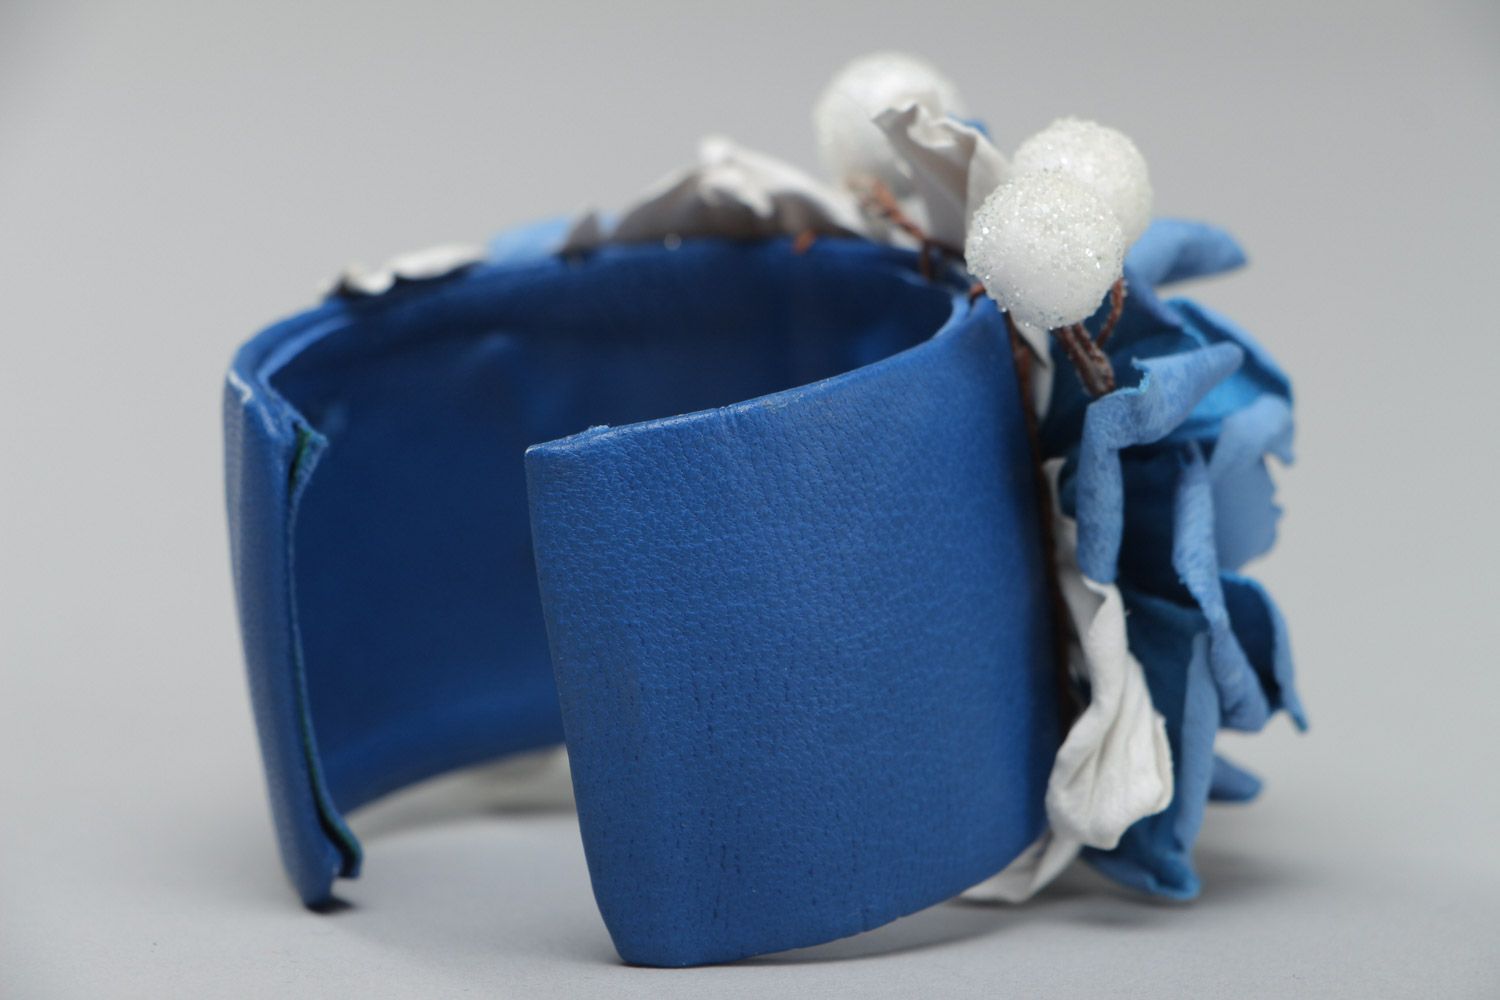 Цветочный кожаный браслет ручной работы широкий с регулируемым размером голубой фото 4